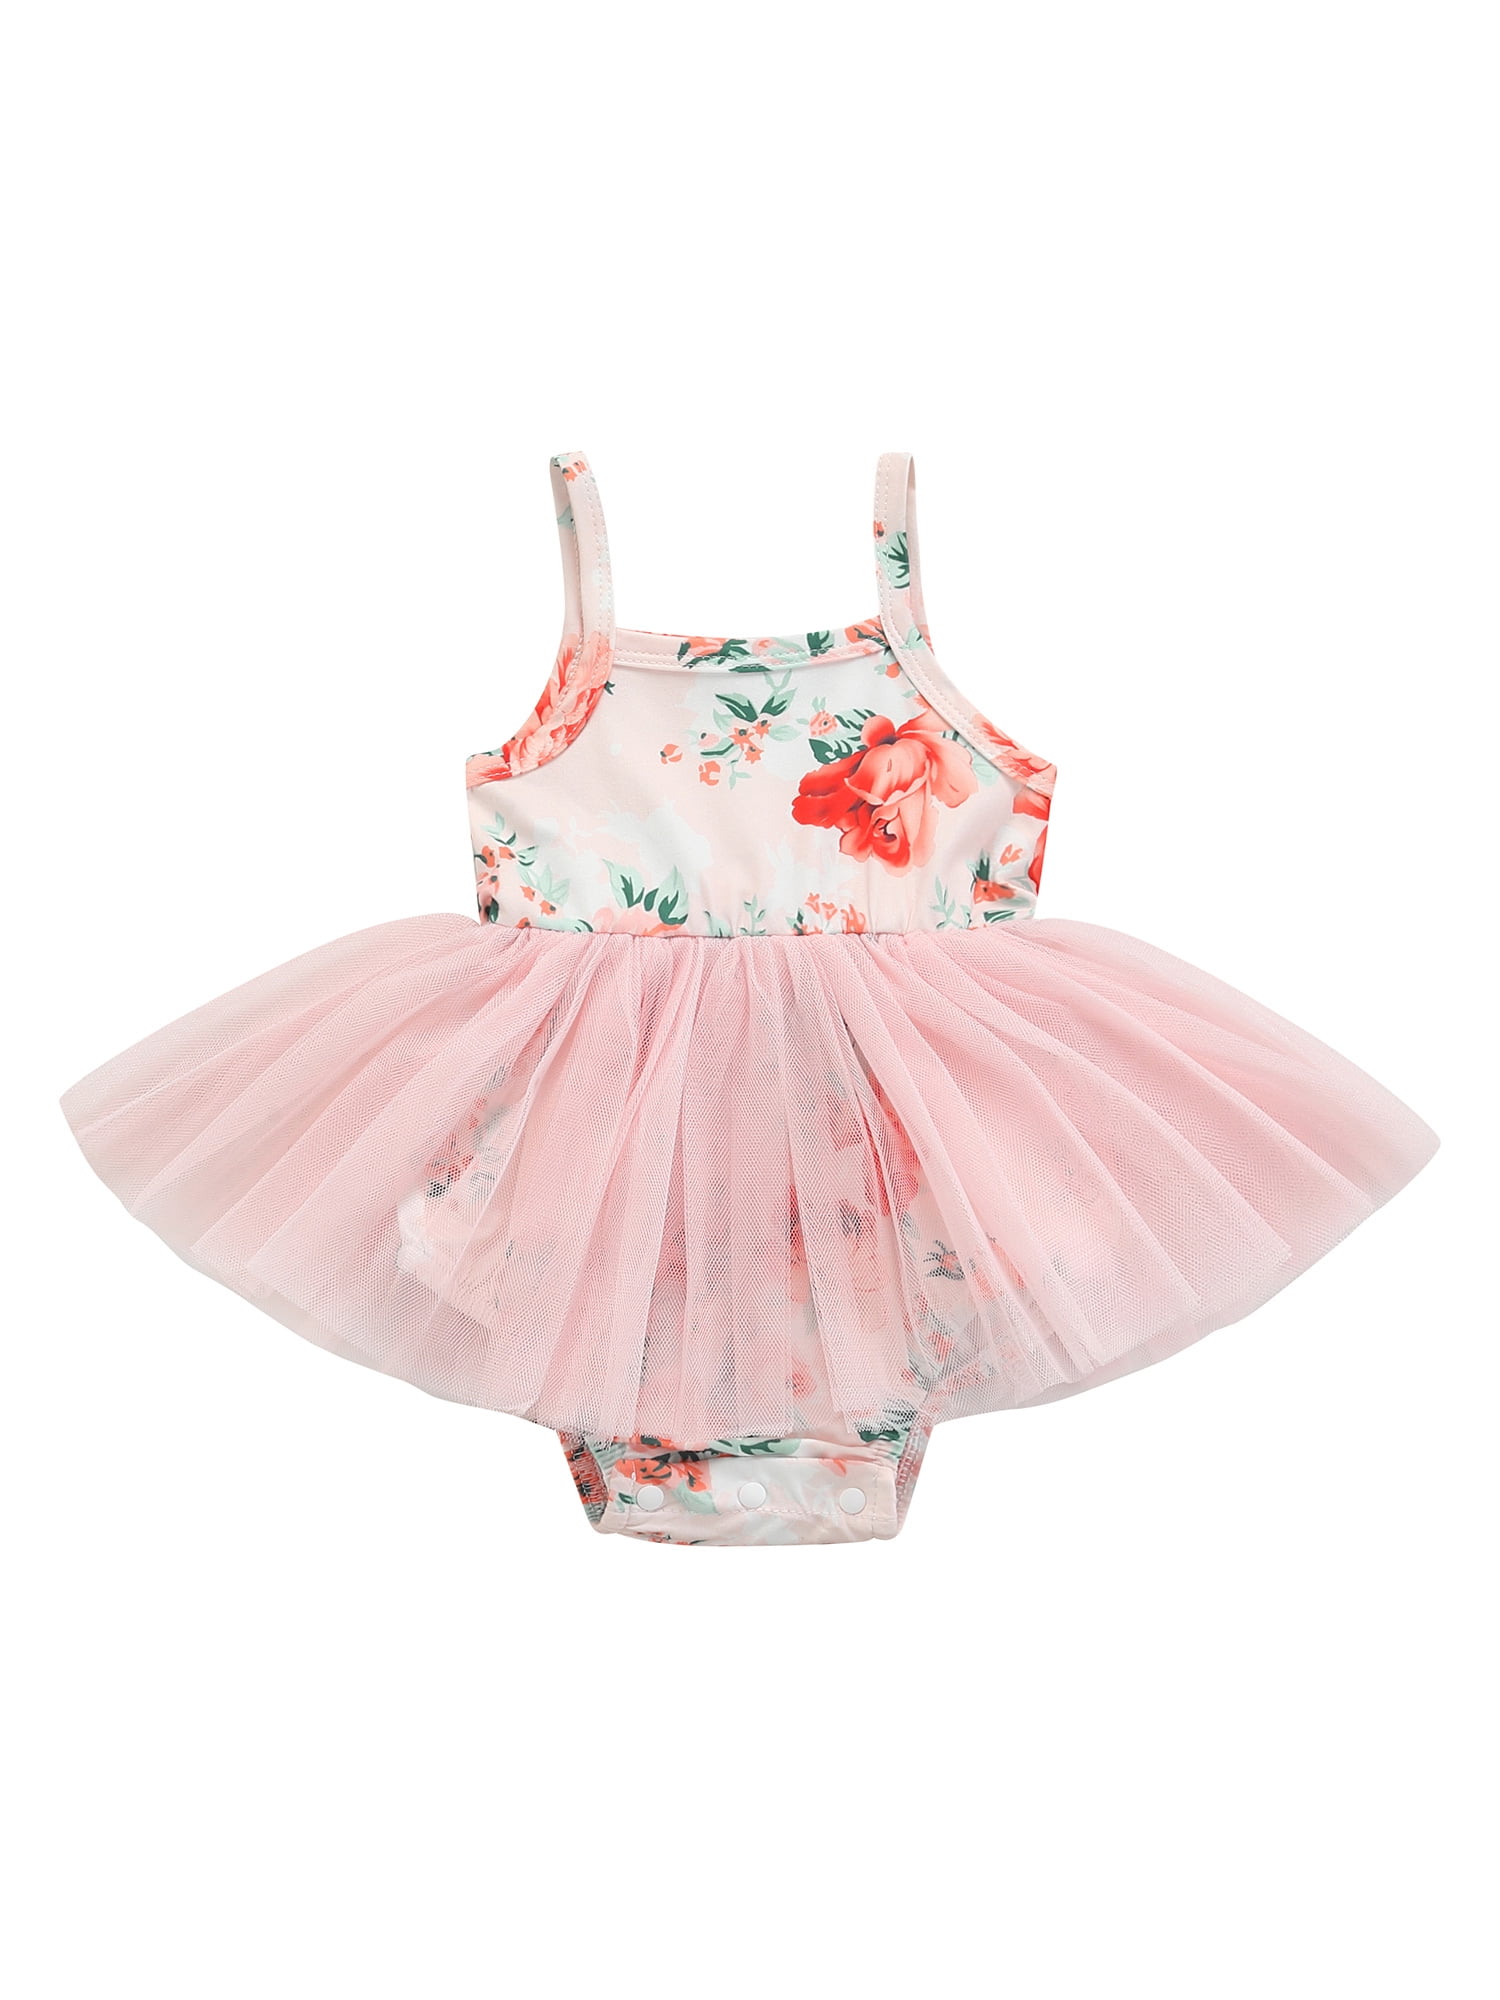 Baby Girls BALLERINA DRESS Skirted Bodysuit YELLOW RUFFLE Sweet Kitty 0-3 3-6 MO